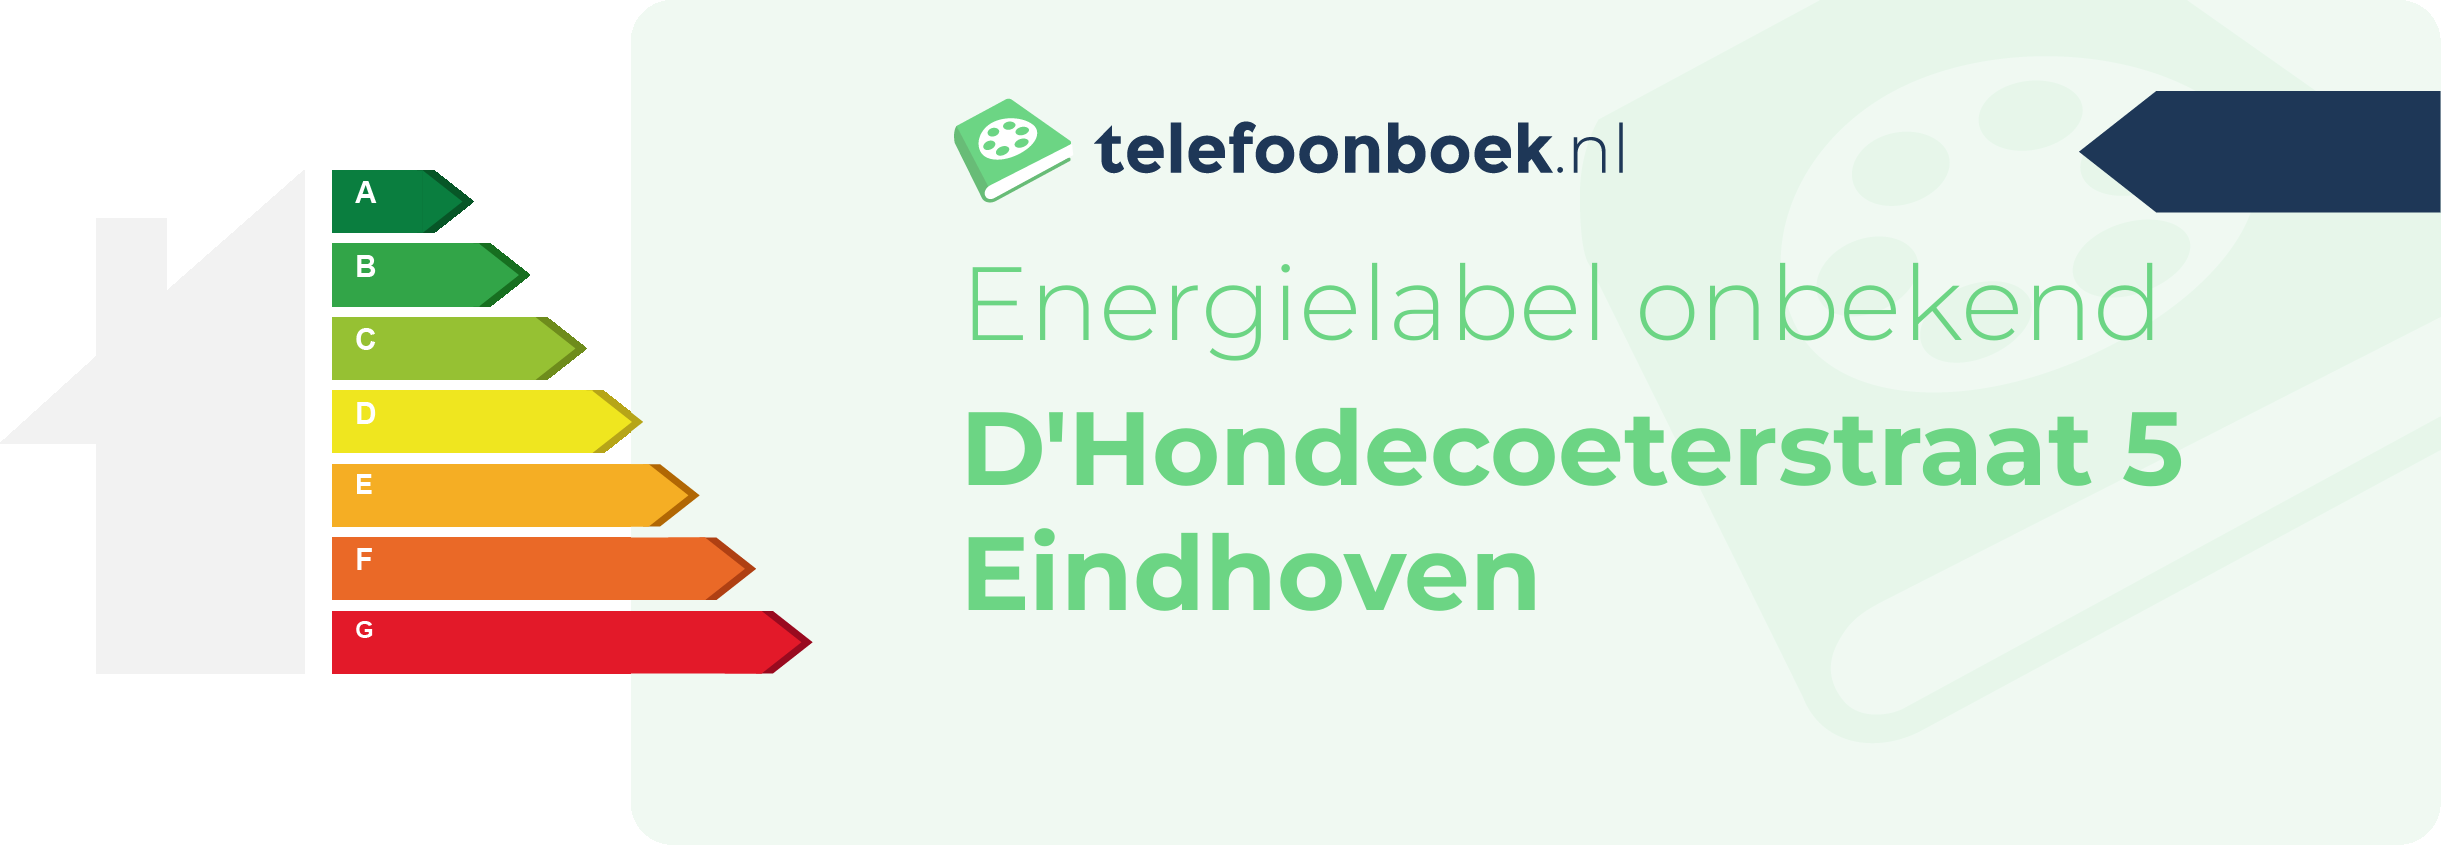 Energielabel D'Hondecoeterstraat 5 Eindhoven